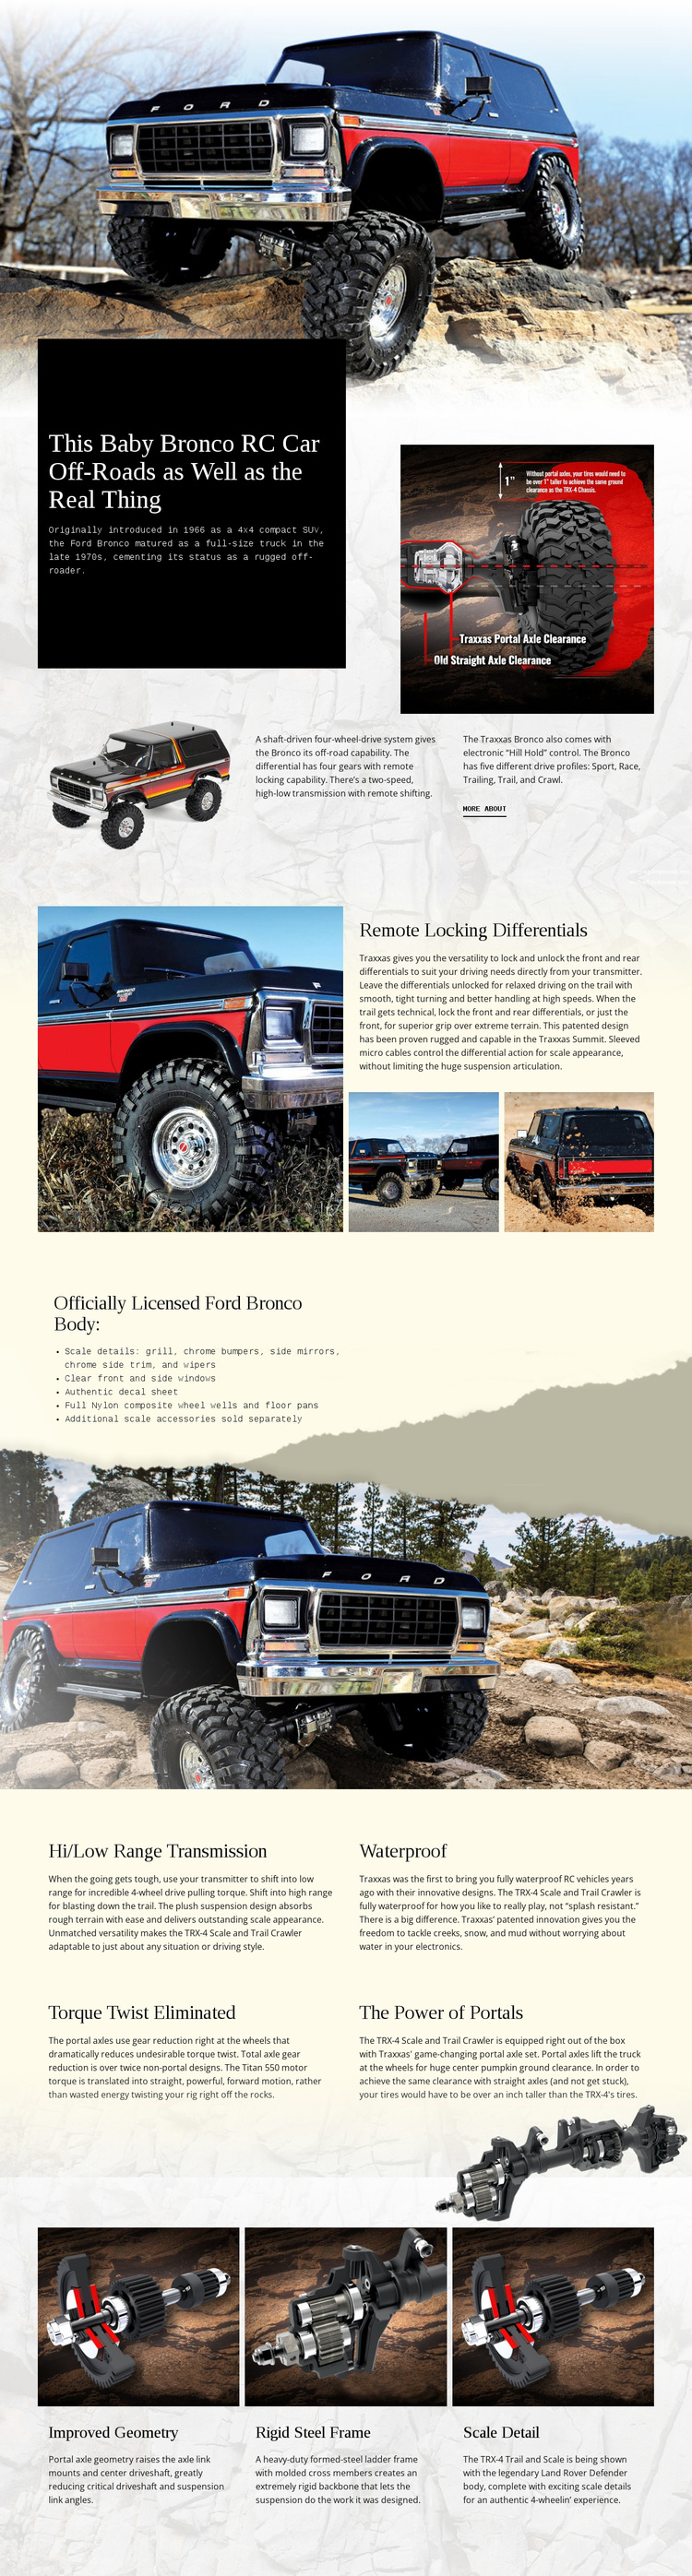 Bronco Rc Car Website Design